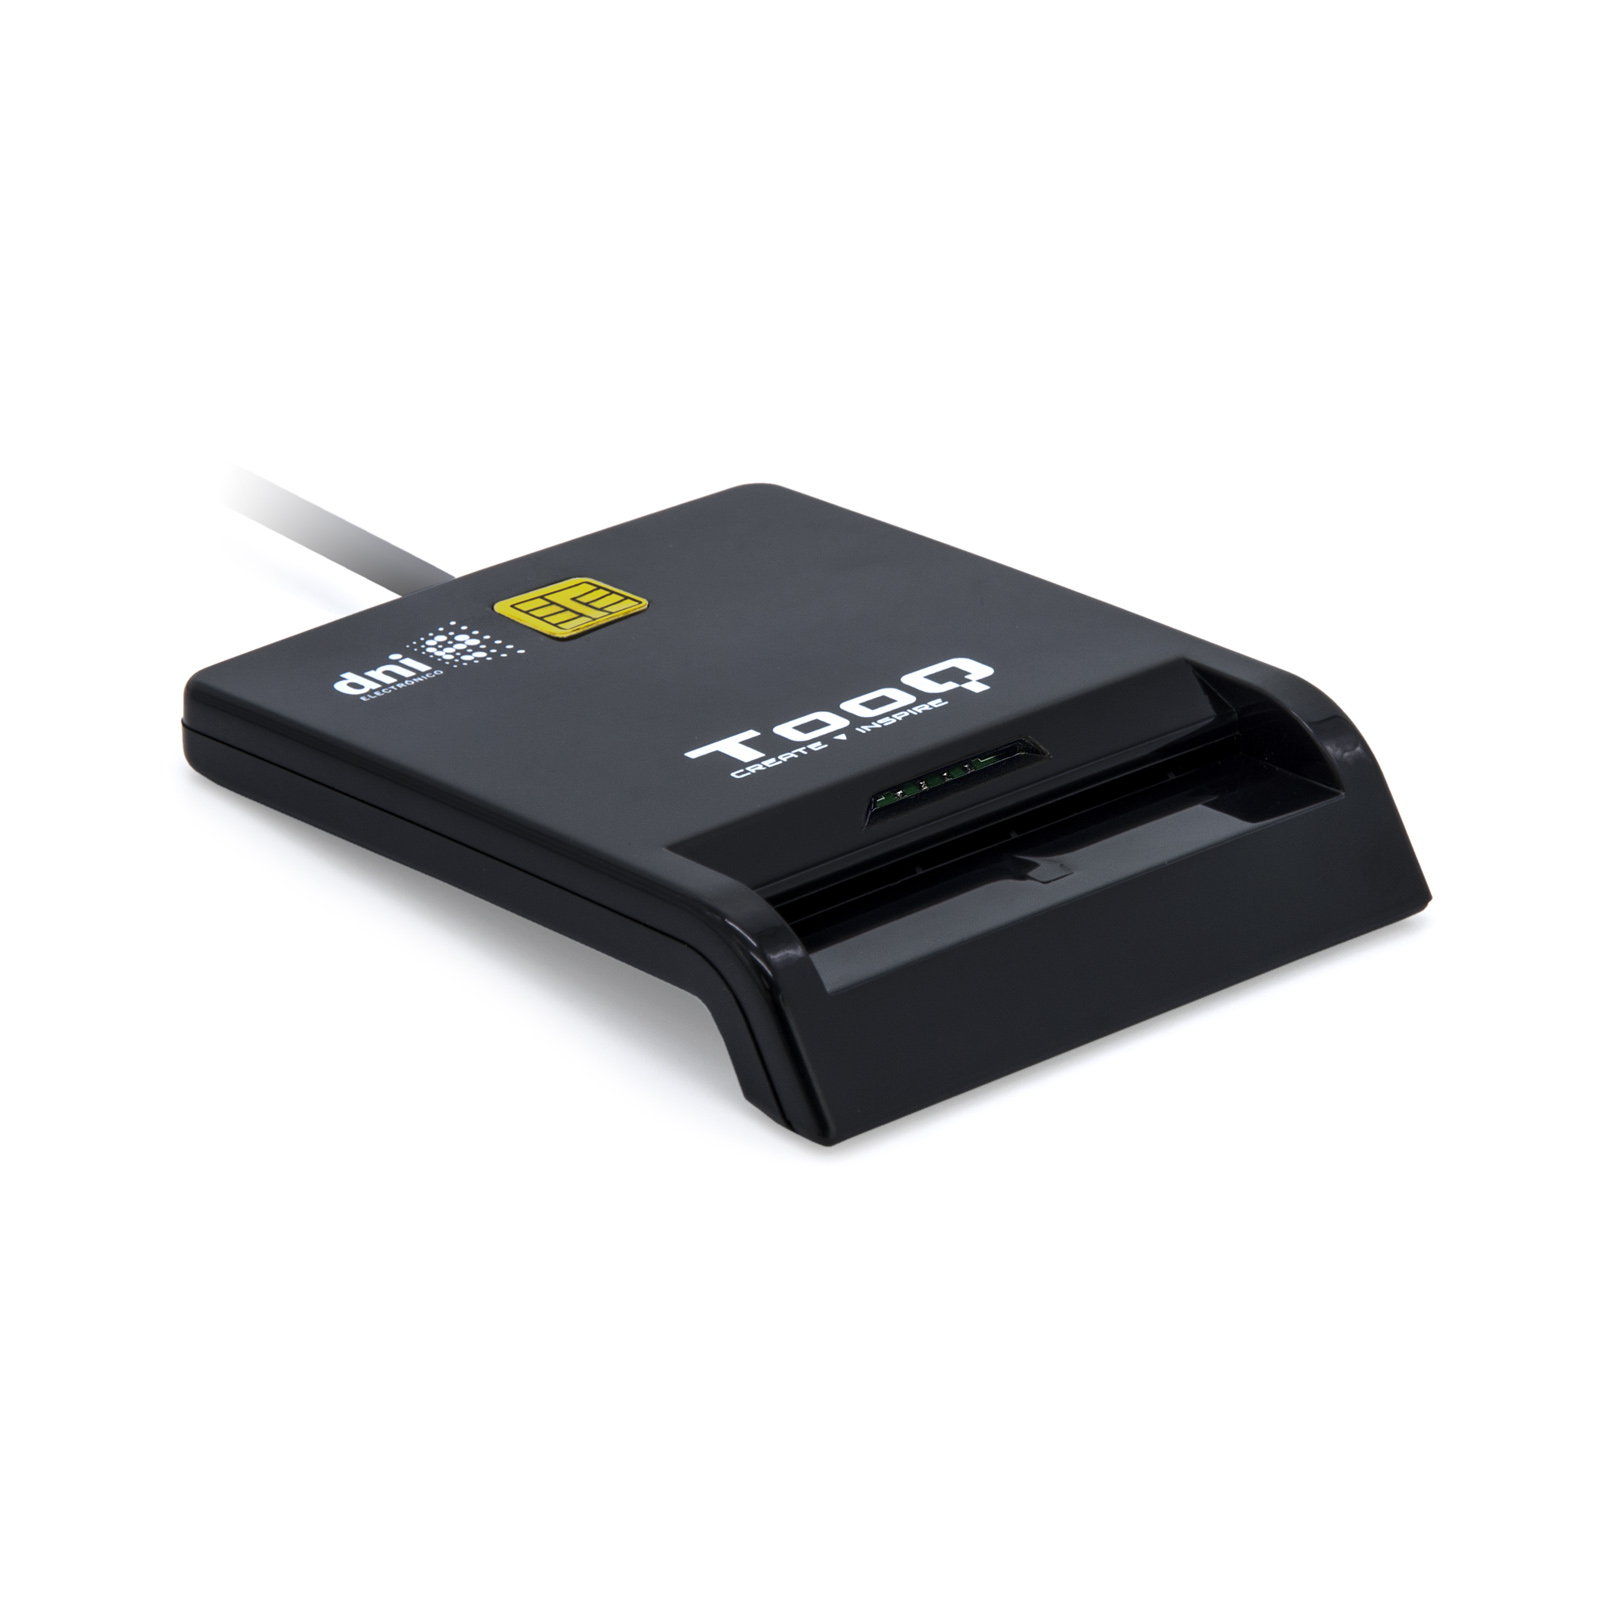 Lecteur de carte à puce Tooq DNIe SIM USB-C - Couleur noire